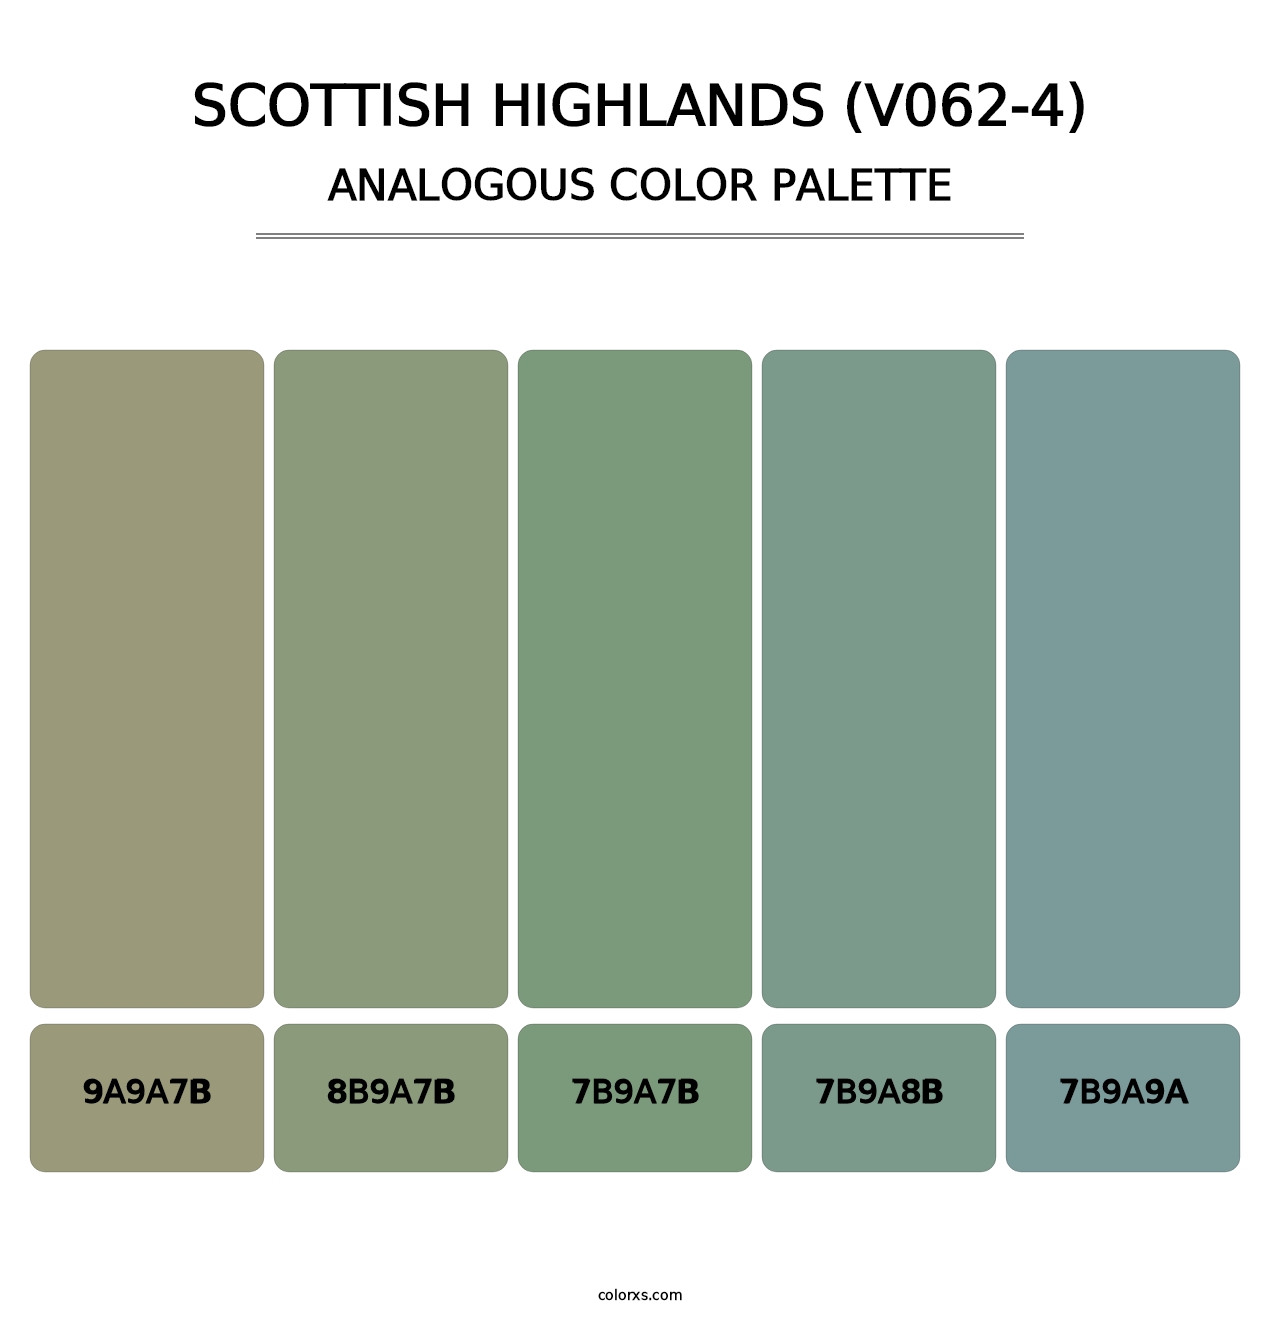 Scottish Highlands (V062-4) - Analogous Color Palette